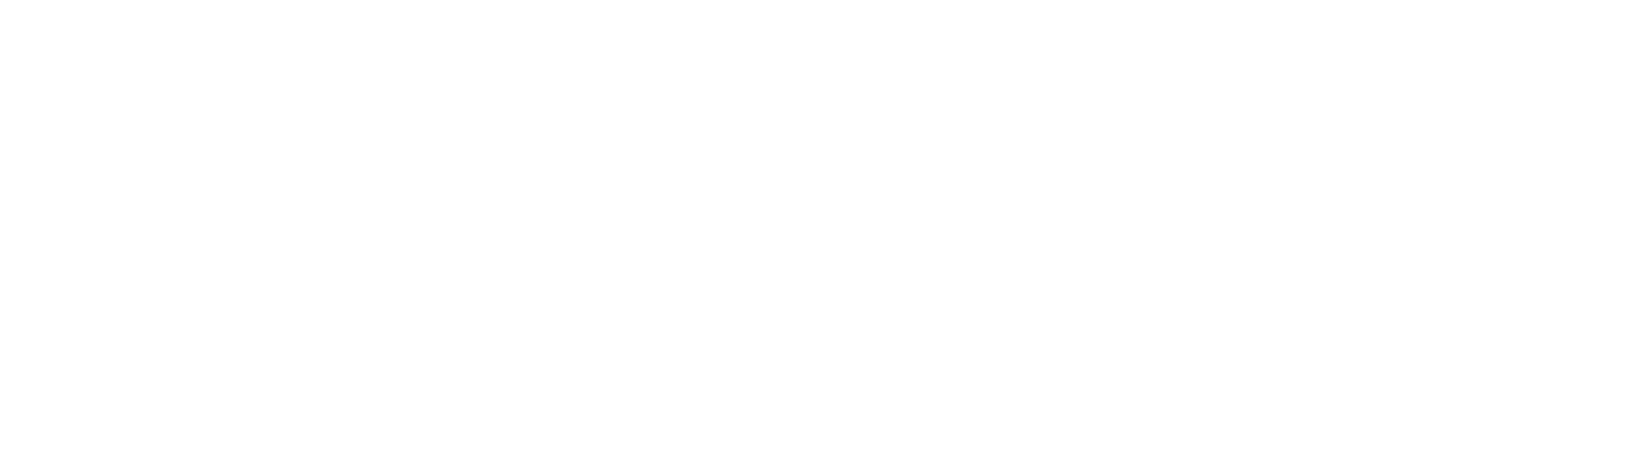 Intelecy_logo_White-1